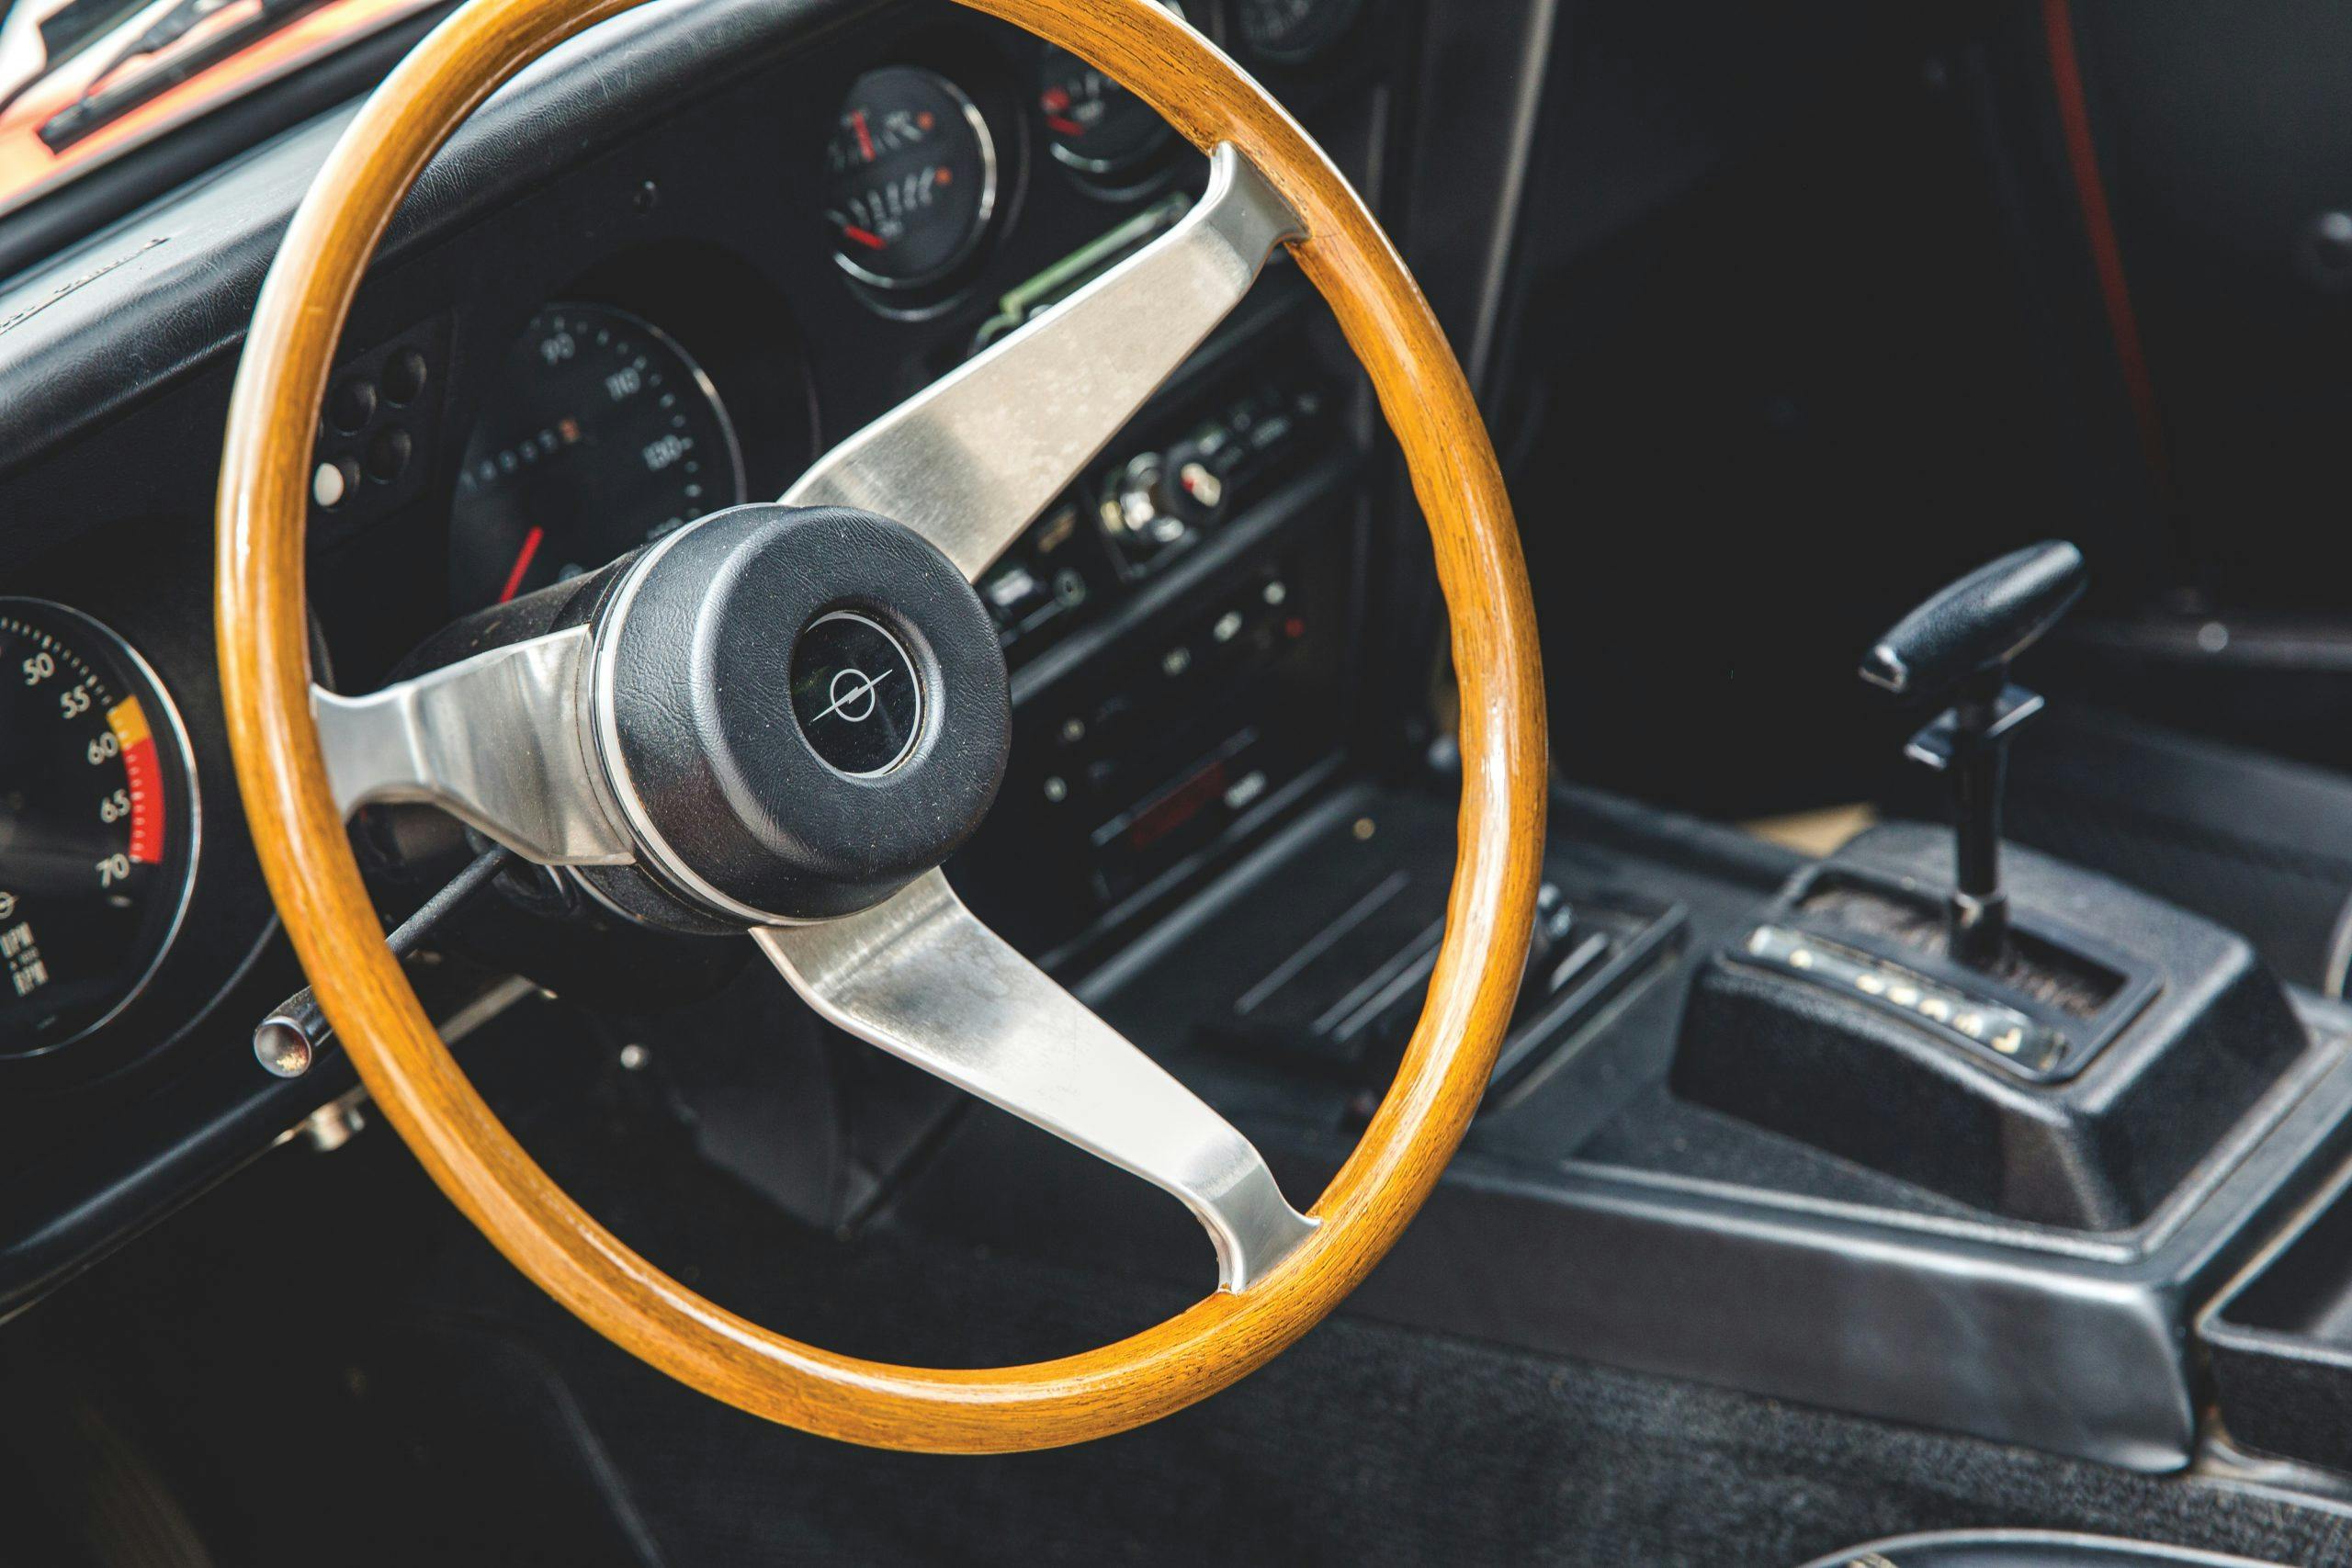 1973 Opel GT interior steering wheel detail